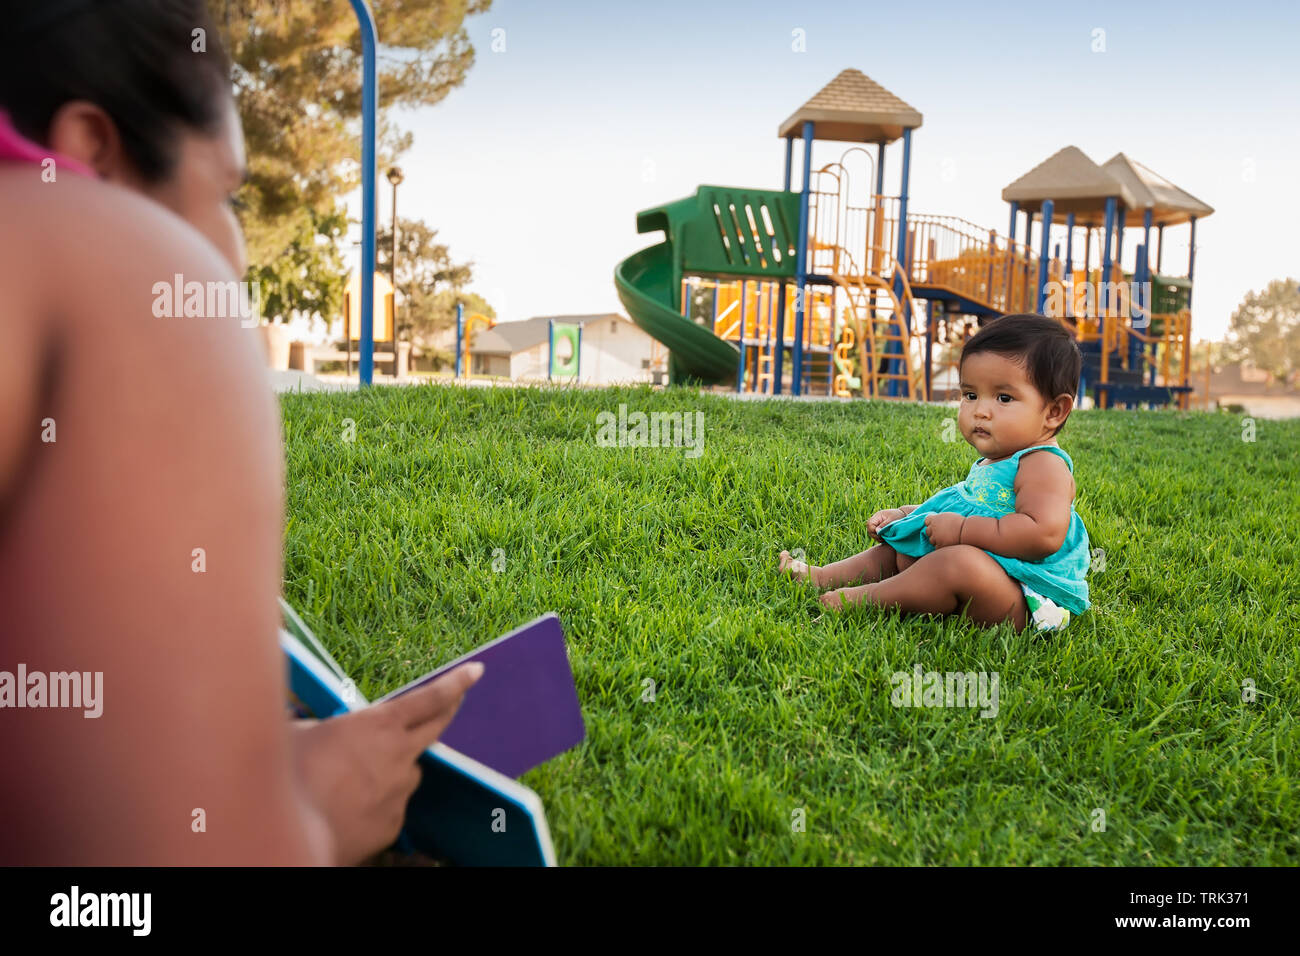 Una donna in possesso di un libro per bambini tenta di innestare l'attenzione di un bambino ragazza seduta nel prato di un parco giochi per bambini. Foto Stock